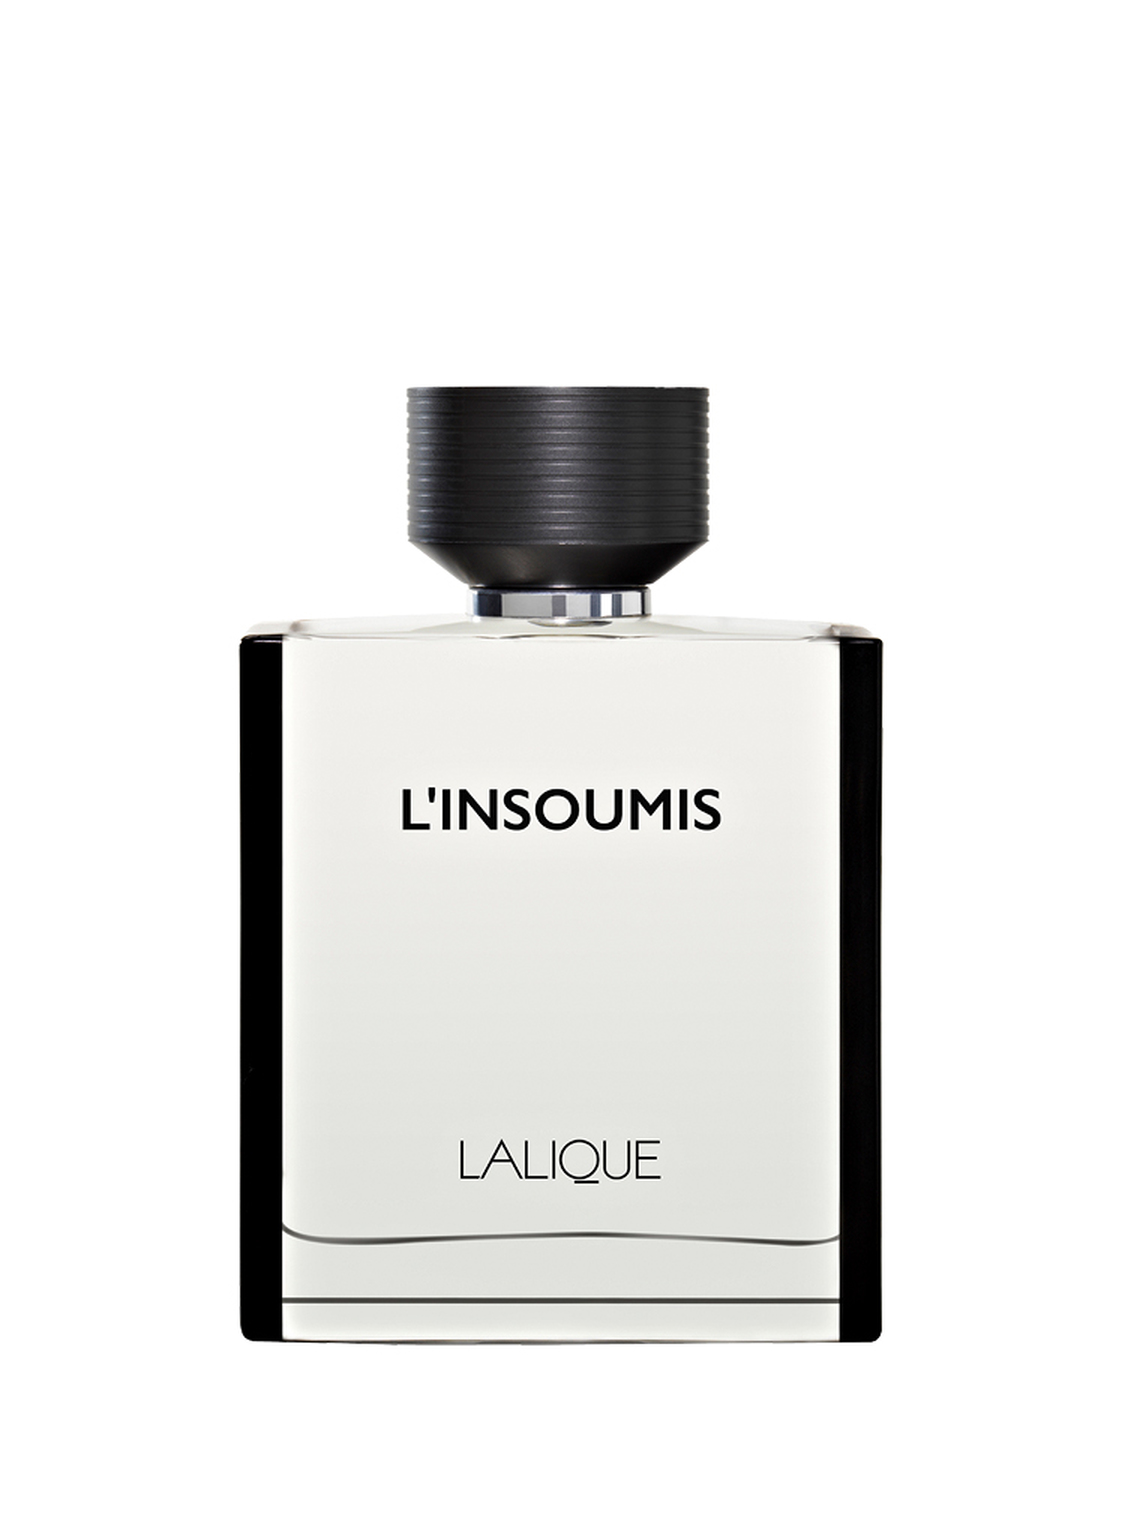 Lalique Parfums L'insoumis Eau de Toilette 50 ml